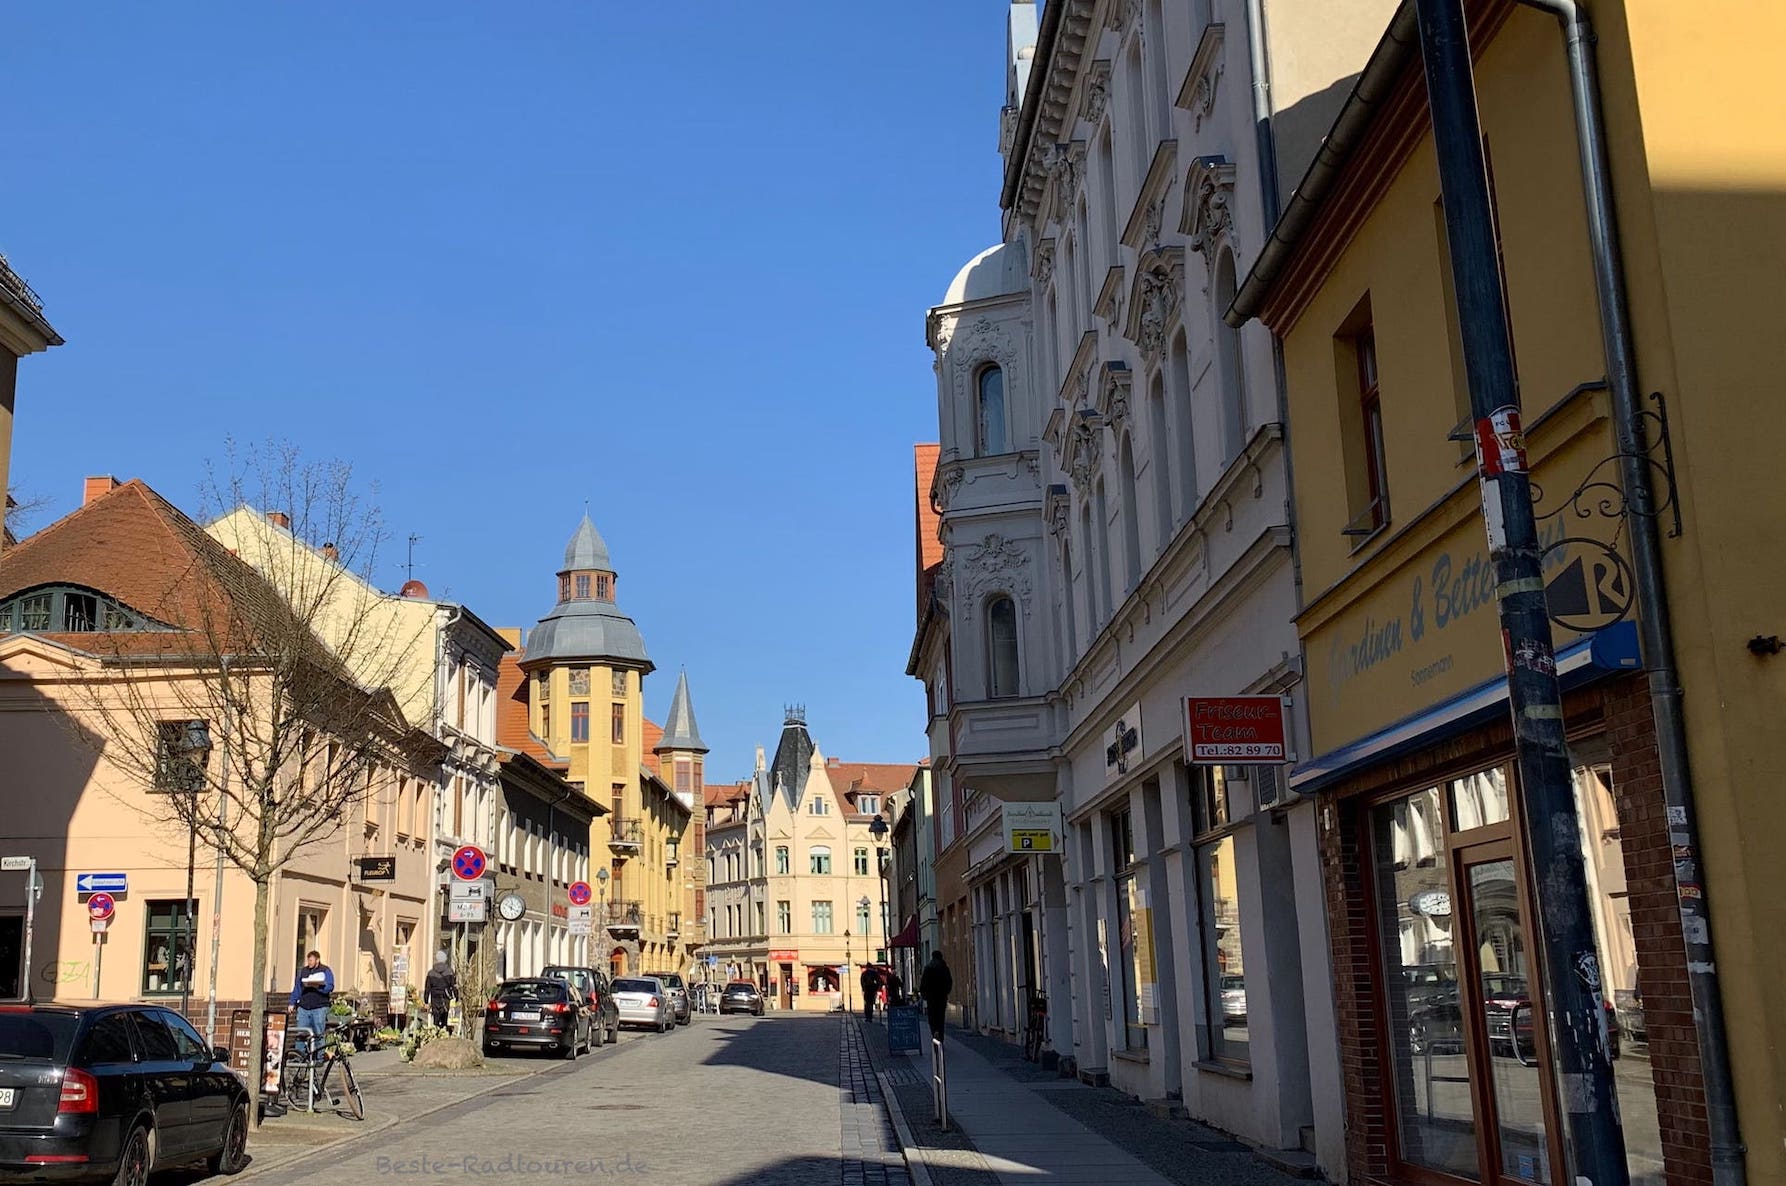 Foto von der Mittelstraße im Zentrum von Nauen, restaurierte Altbauten, Geschäfte